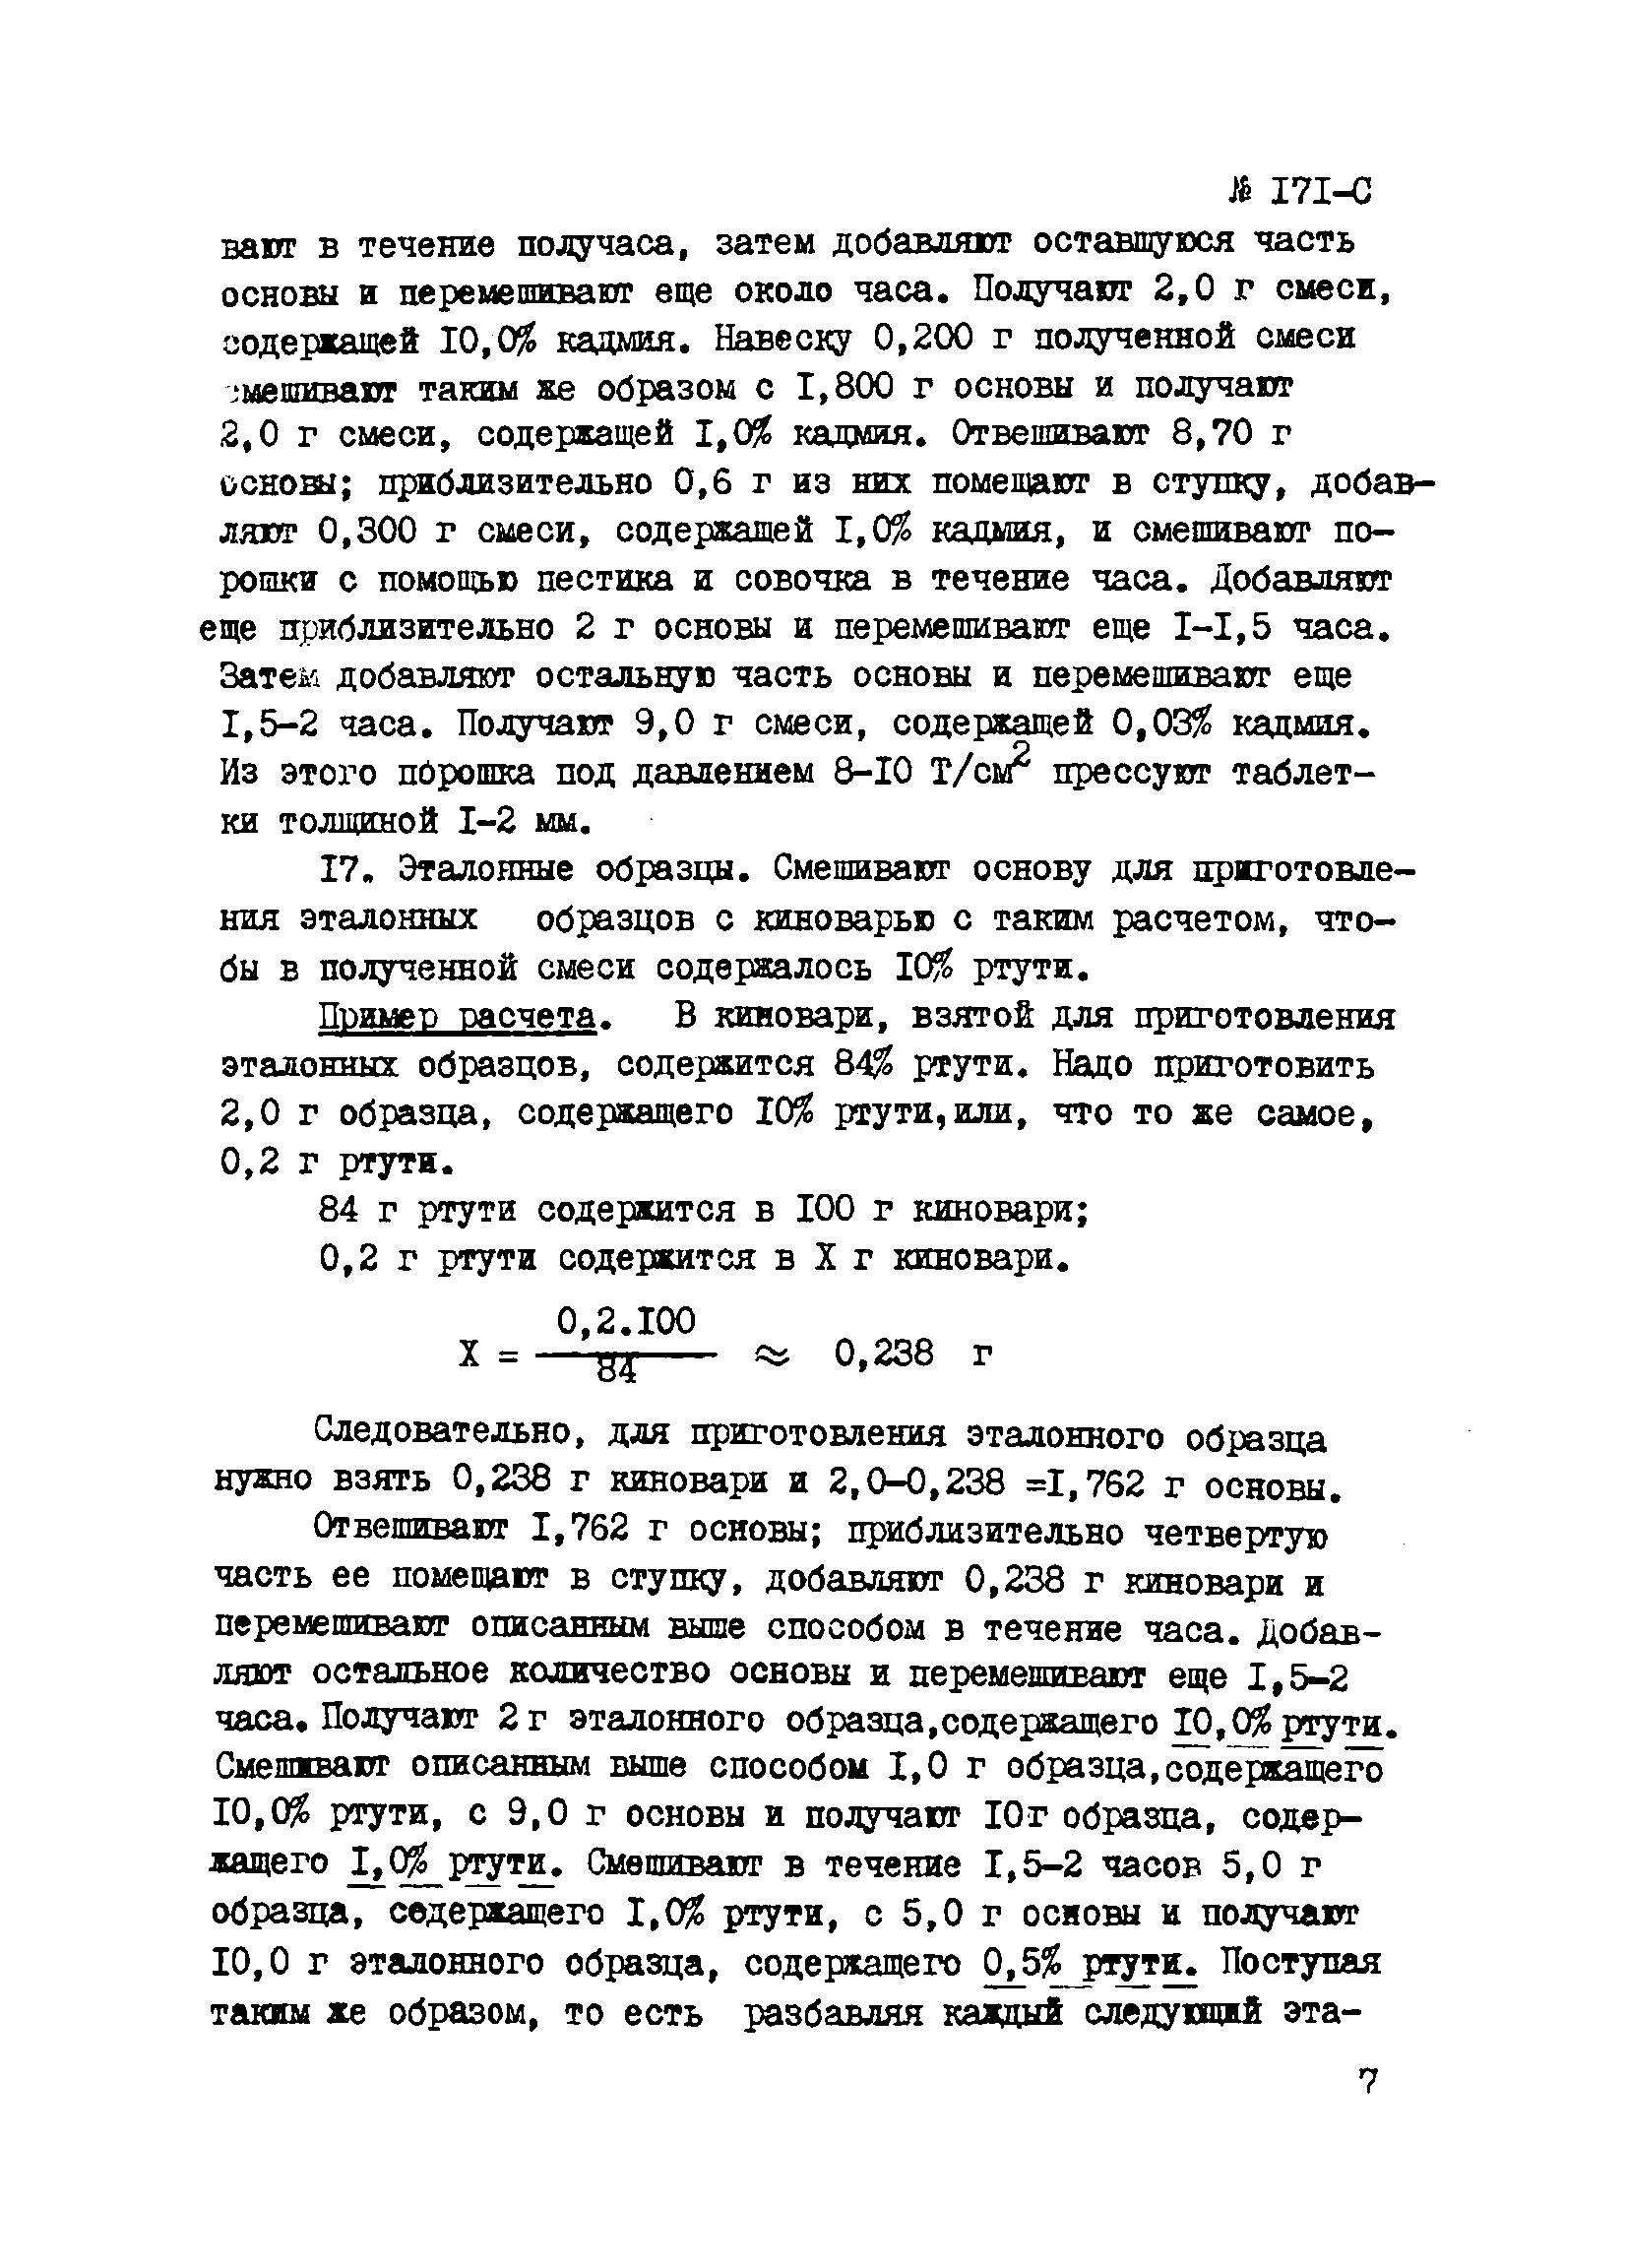 Инструкция НСАМ 171-С